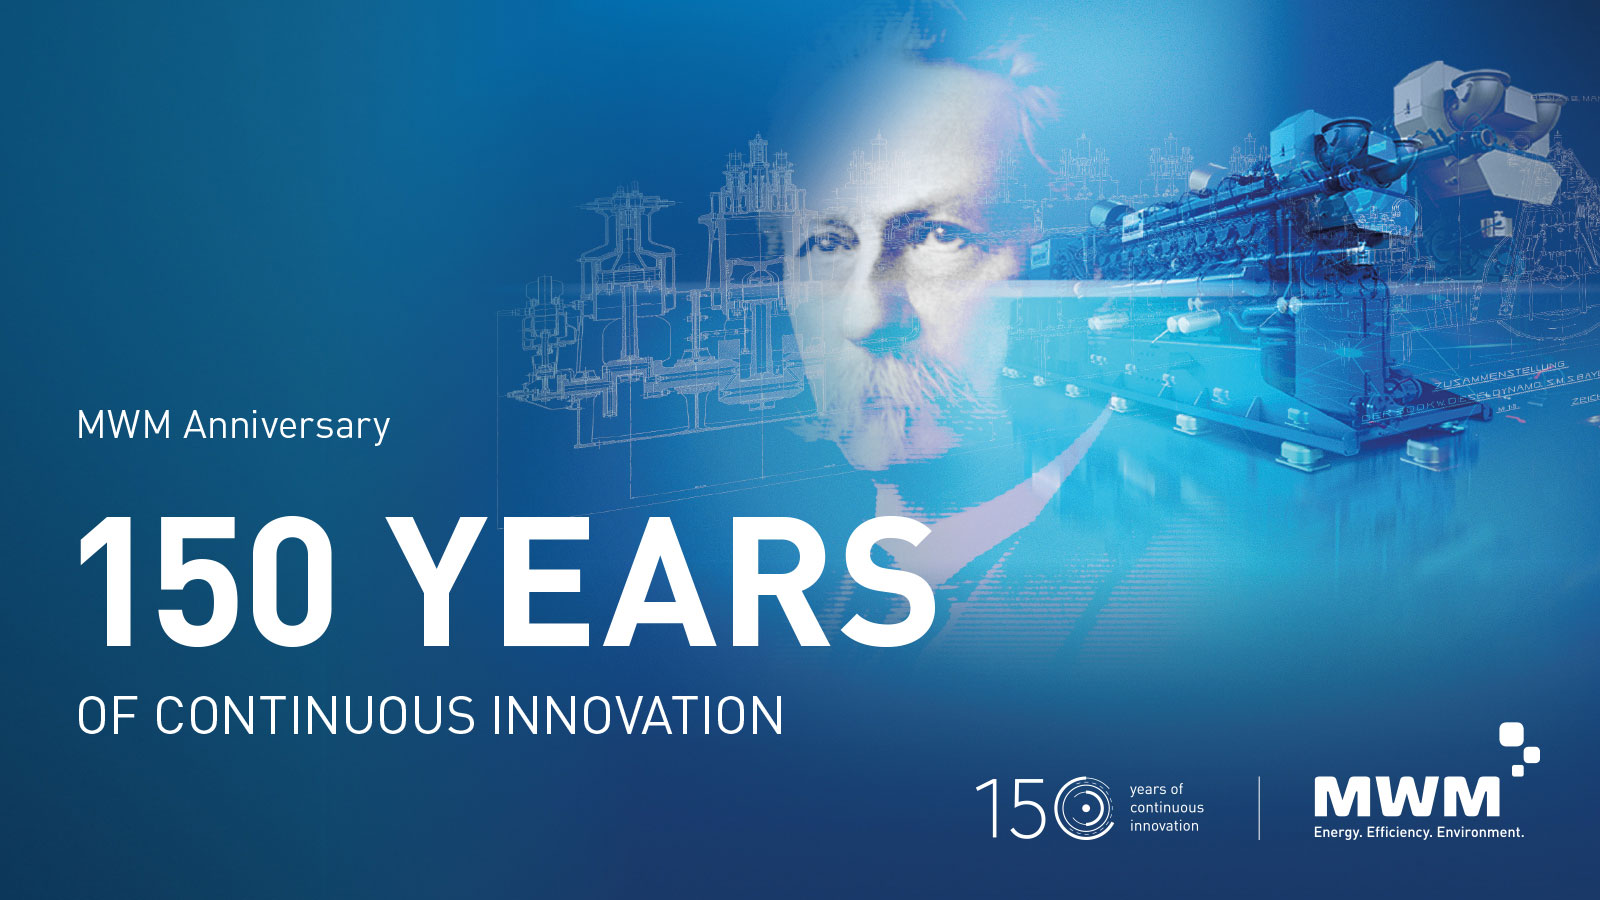 Компания MWM празднует большой юбилей – 150-лет инноваций и прогресса в сфере децентрализованной выработки энергии посредством высокоэффективных газопоршневых агрегатов